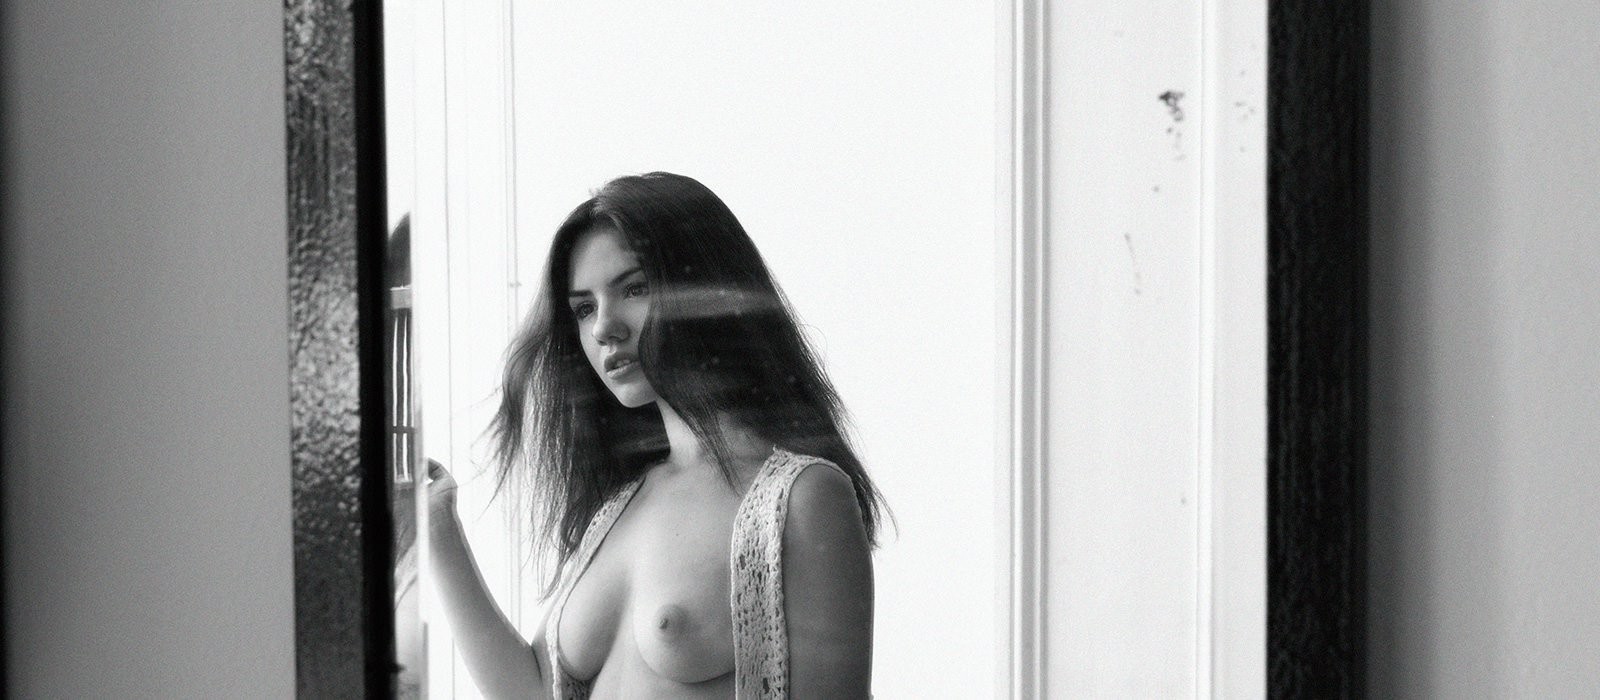 Aquí encontrareis fotos de Delaia González desnuda, transparencias, posados...